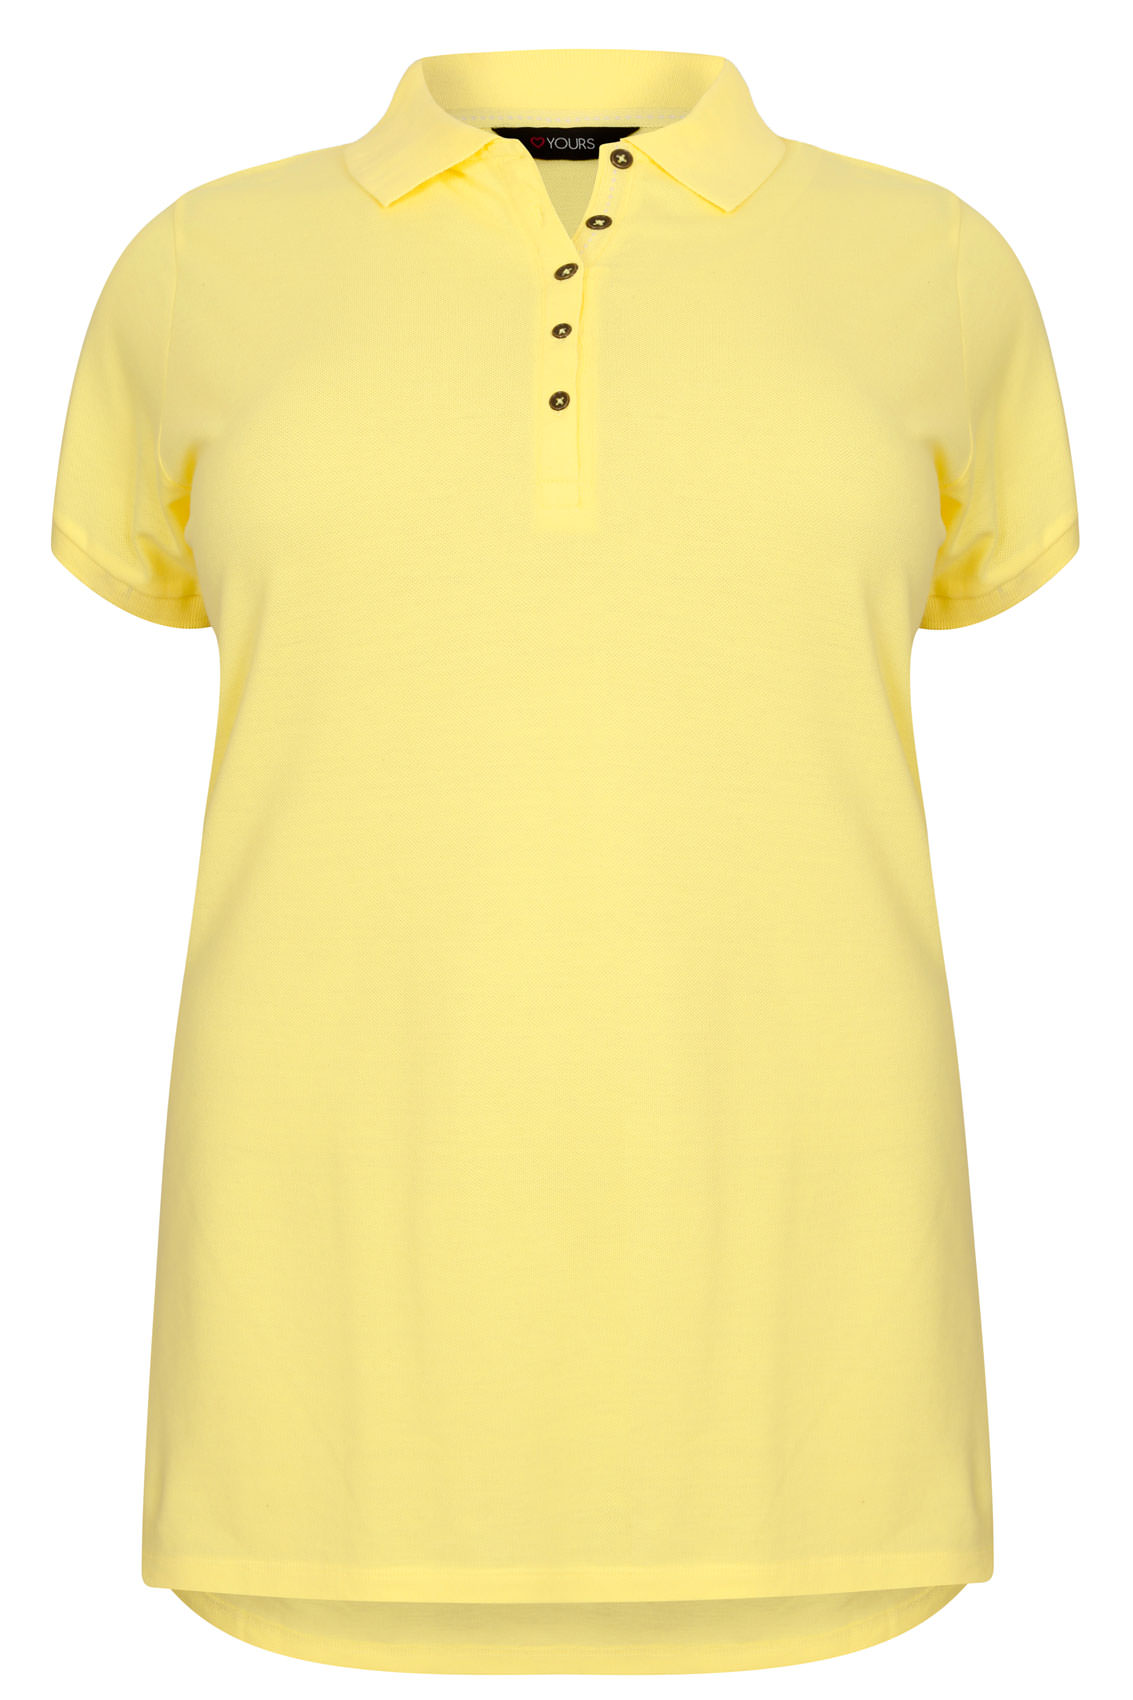 Yellow Polo Shirt, Plus size 16 to 36